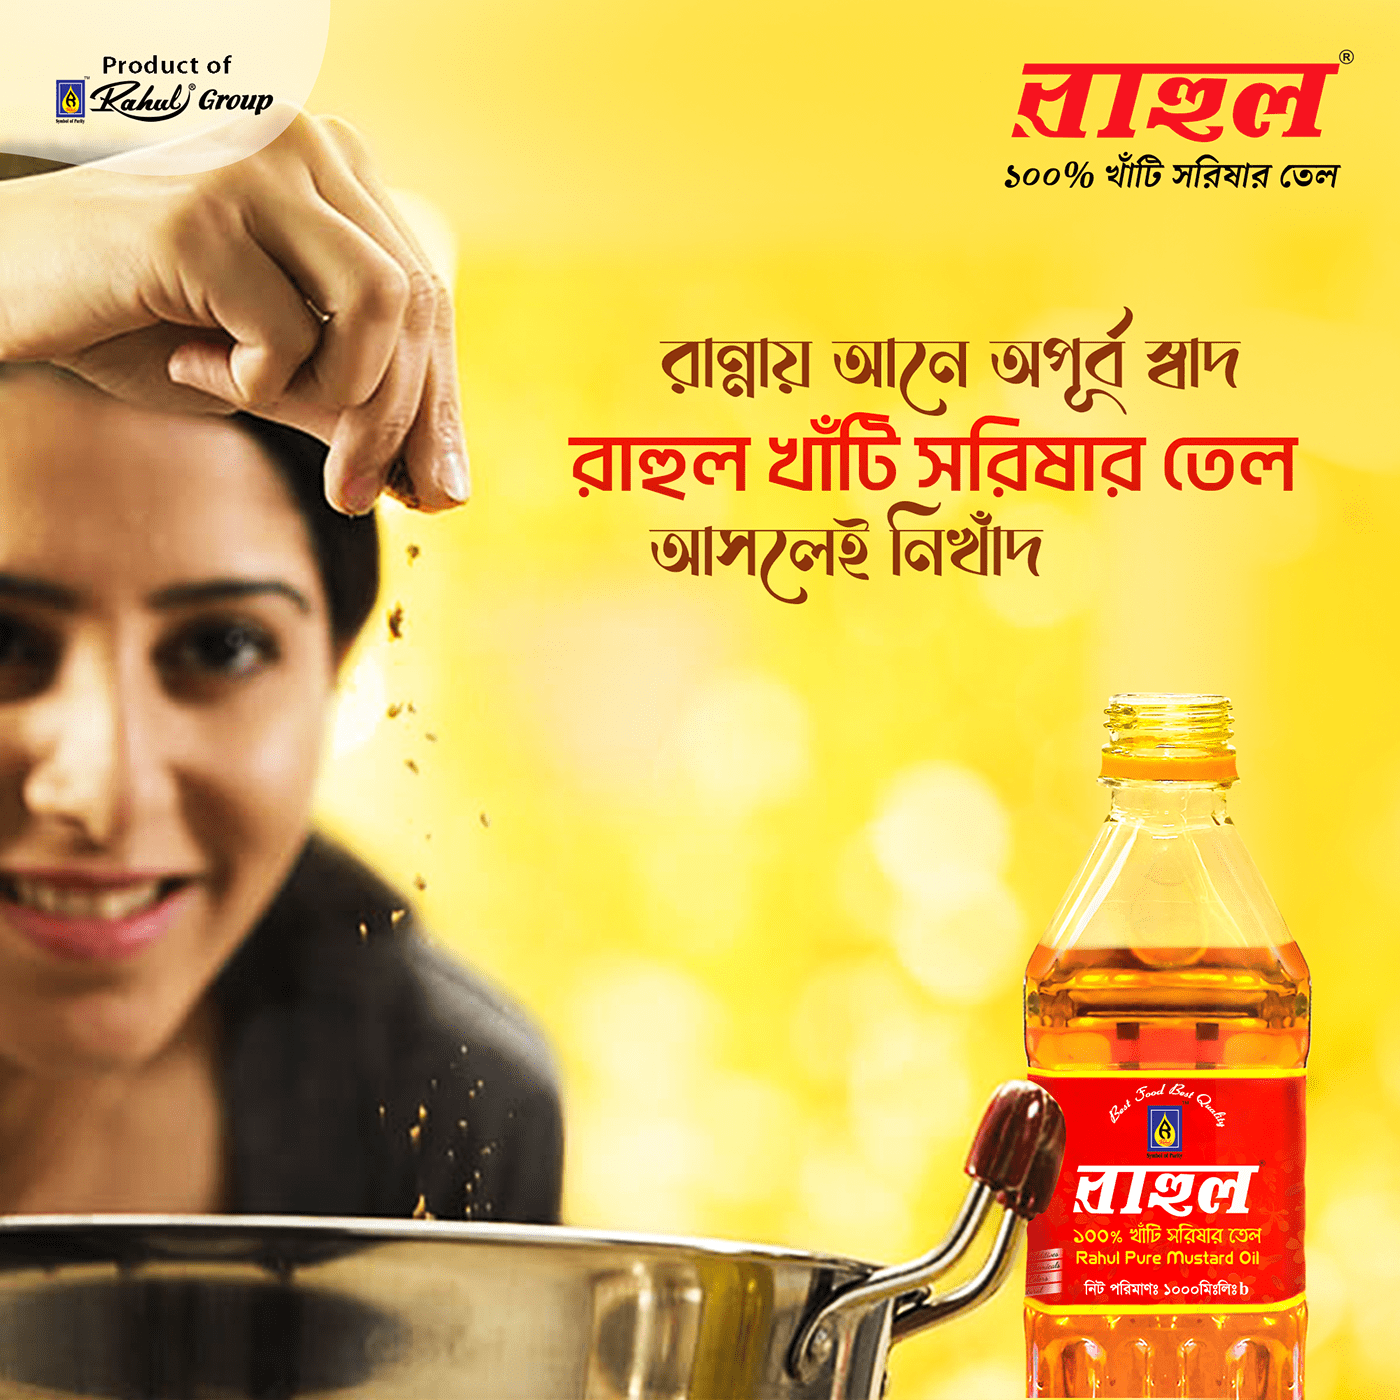 Product Advertising social media post ads Socialmedia Mustard Oil banner bangla ads mustard oil